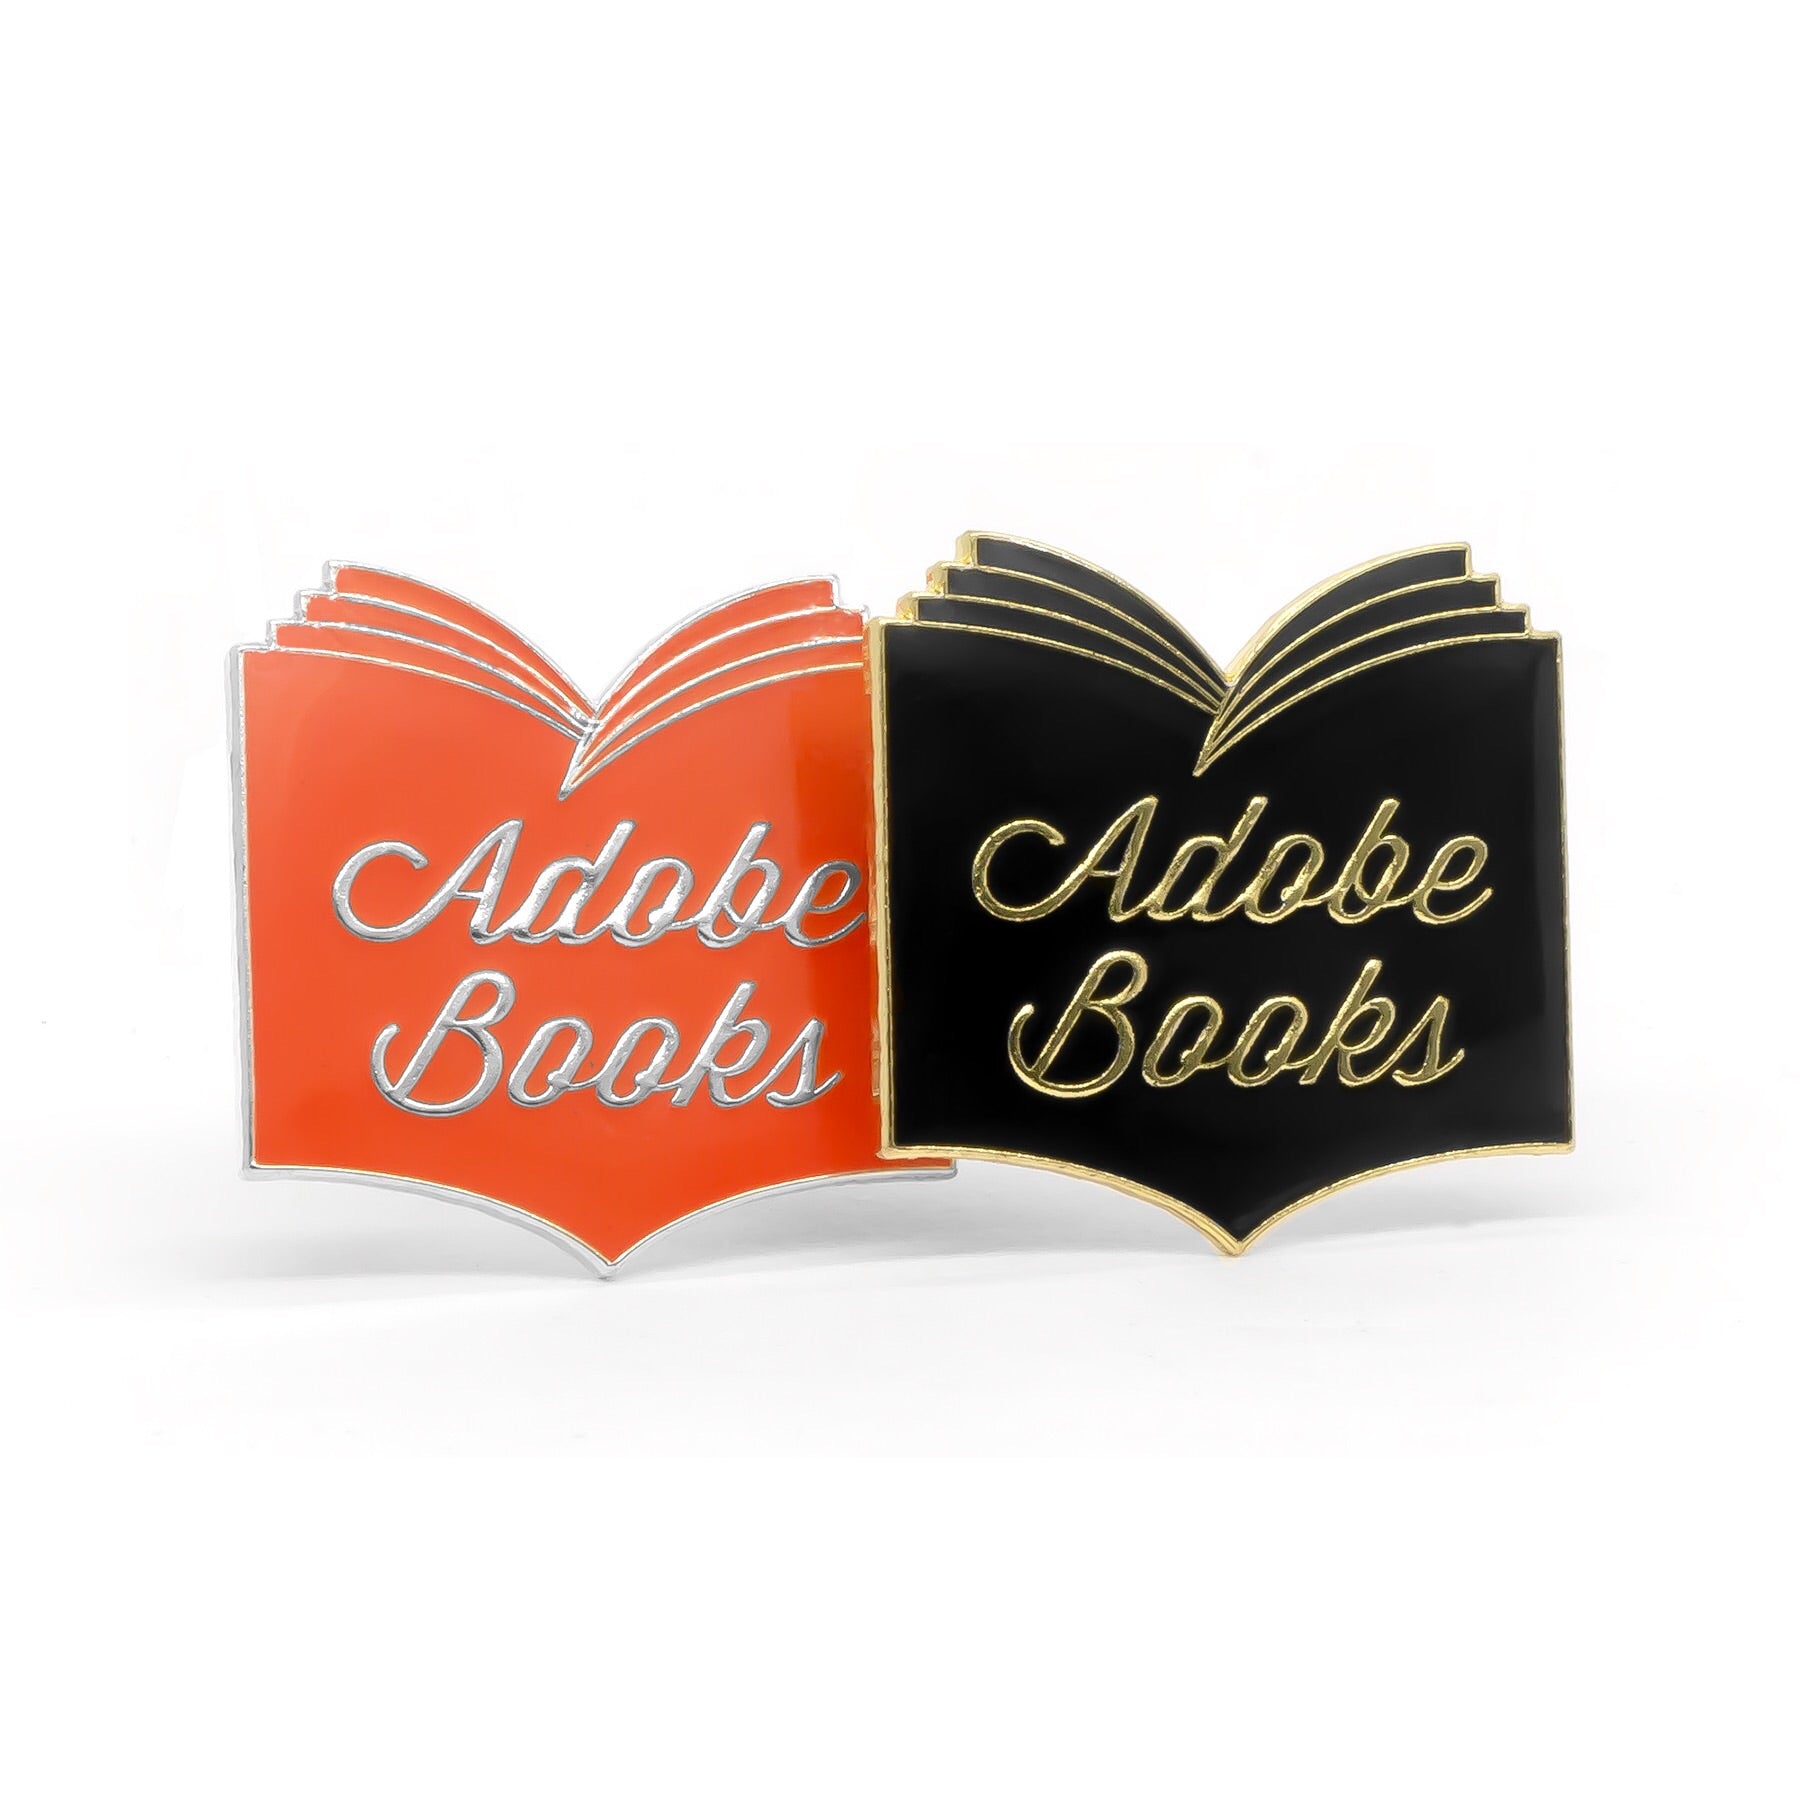 Adobe Books enamel pin